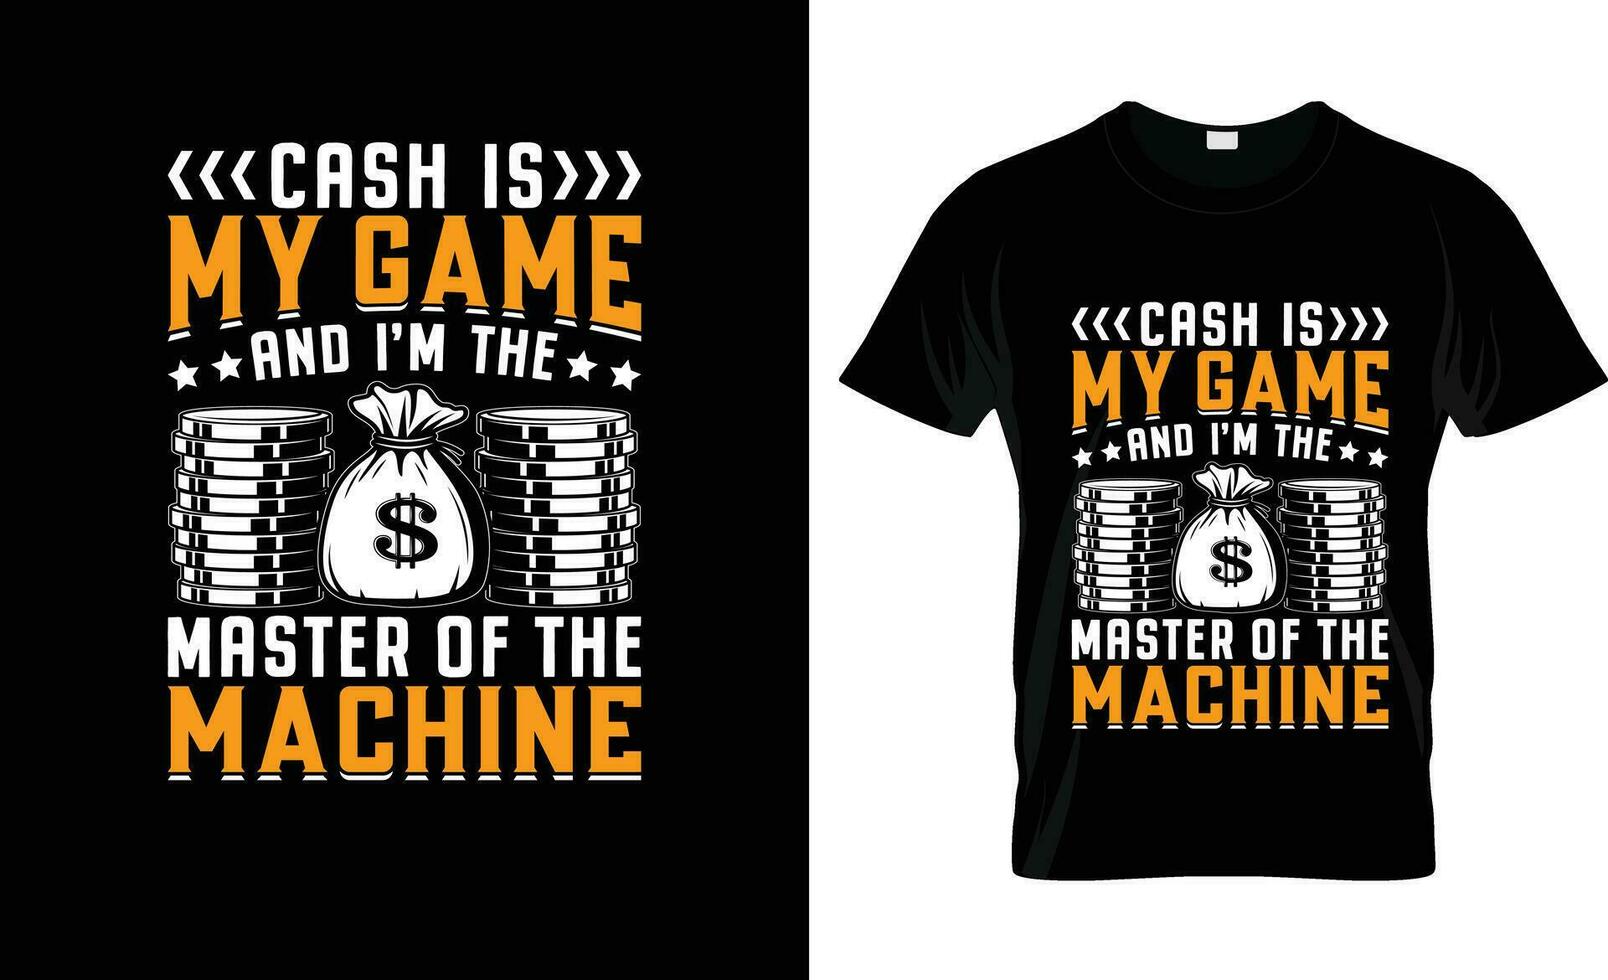 Kasse ist meine Spiel und Ich bin das Meister von bunt Grafik T-Shirt, T-Shirt drucken Attrappe, Lehrmodell, Simulation vektor